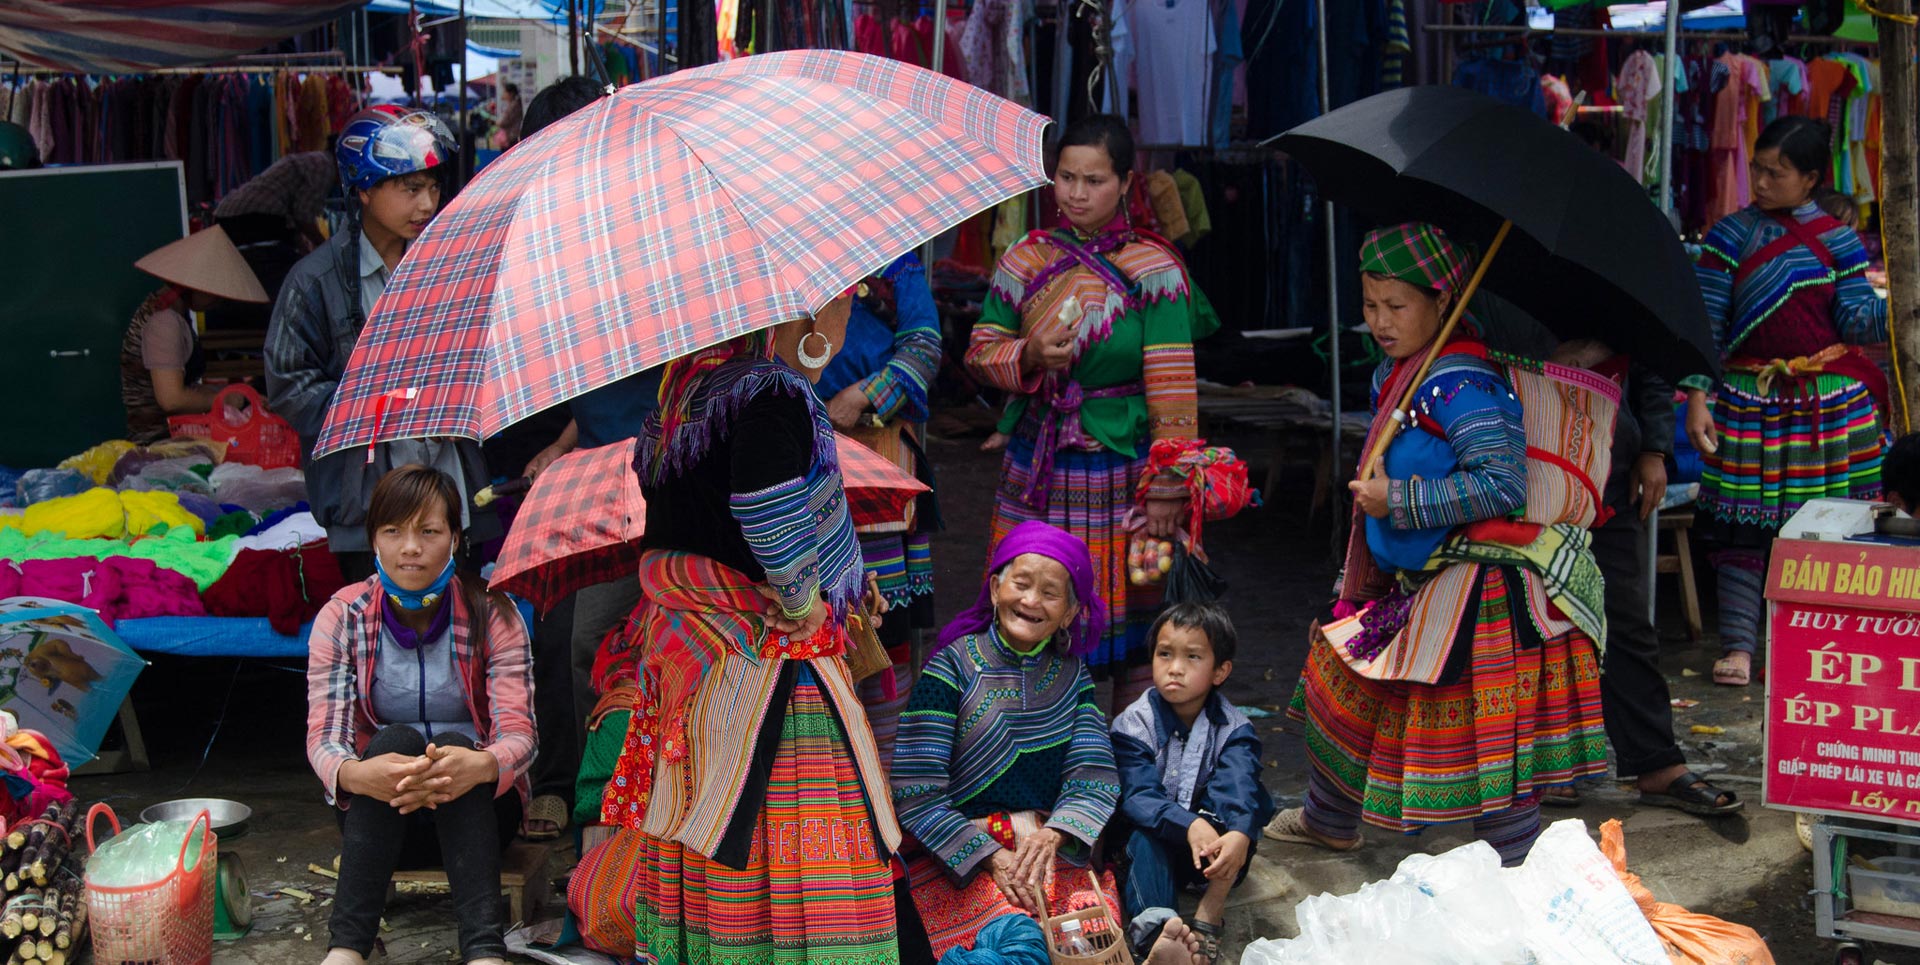 Hmong women at the Bac Ha market